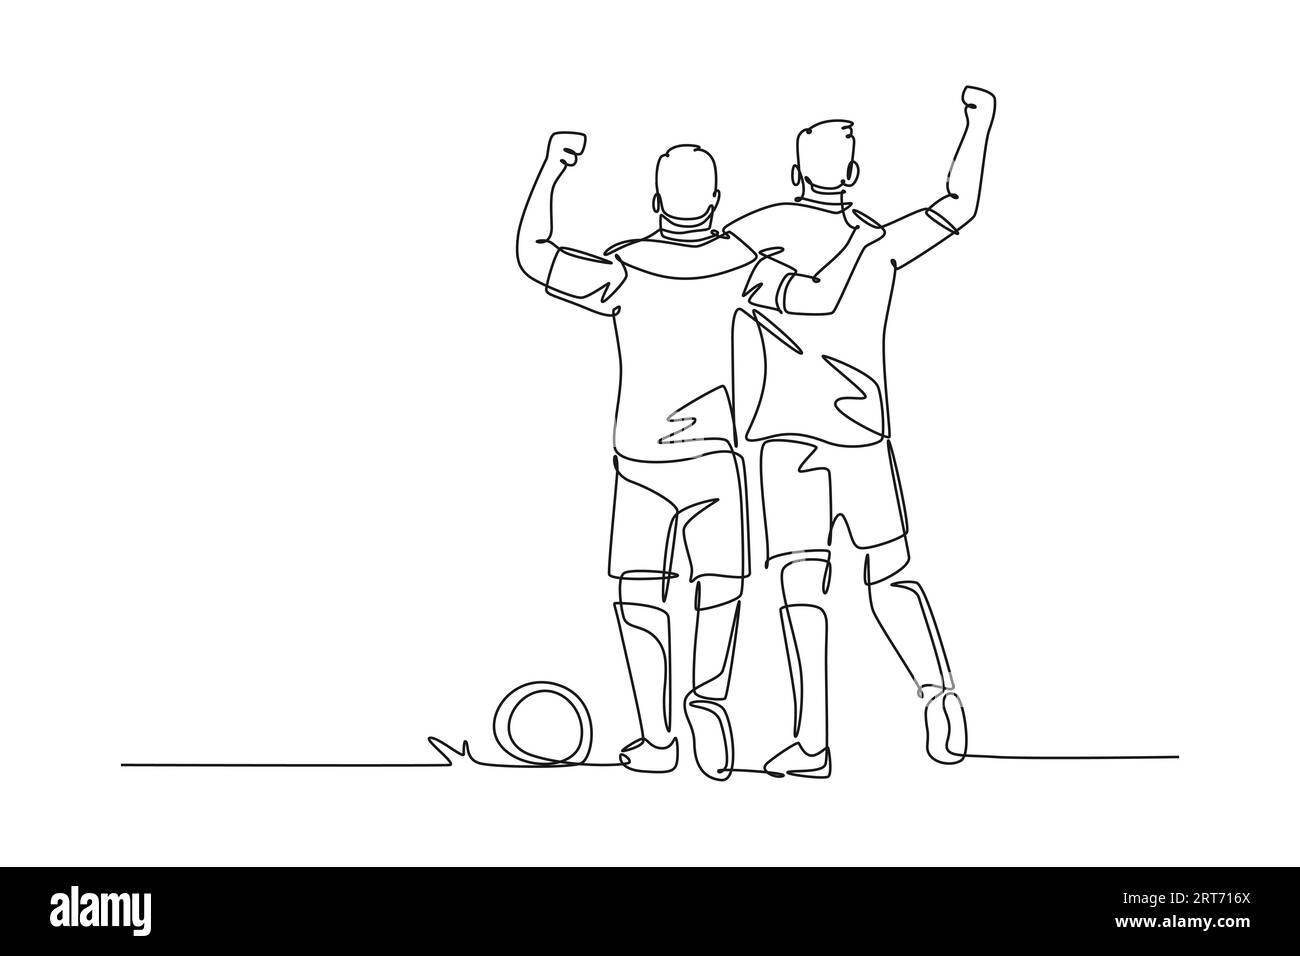 Eine Linie zieht aktiv zwei Fußballspieler umarmen sich, gehen zusammen, um zu feiern, zeigen Sportlichkeit. Respekt im Fußballsport. Moderne Kontinente Stockfoto